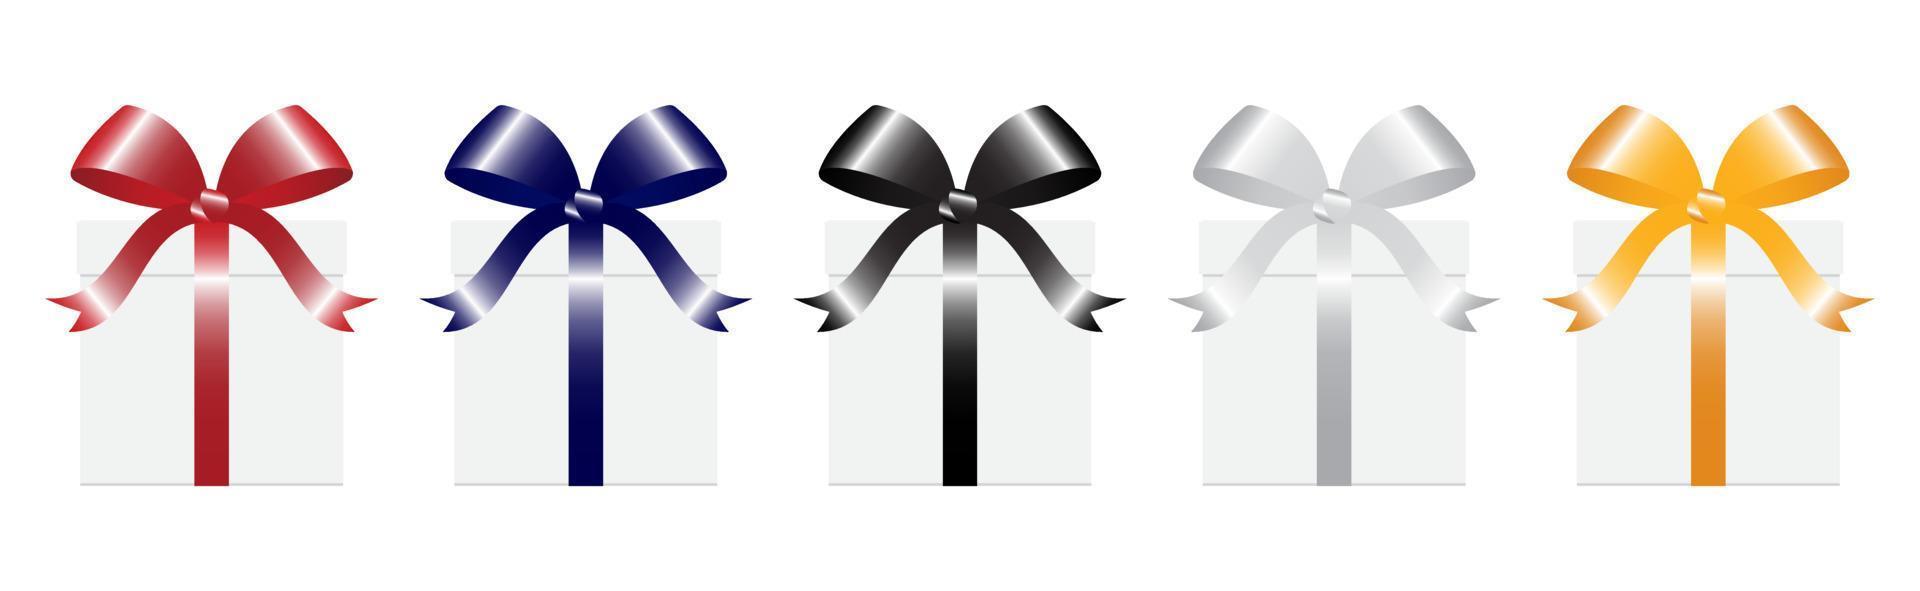 Vektorset aus weißen Geschenkboxen mit verschiedenen Farbbändern. realistische giftbox in der vorderansicht, lokalisiert auf weißem hintergrund vektor